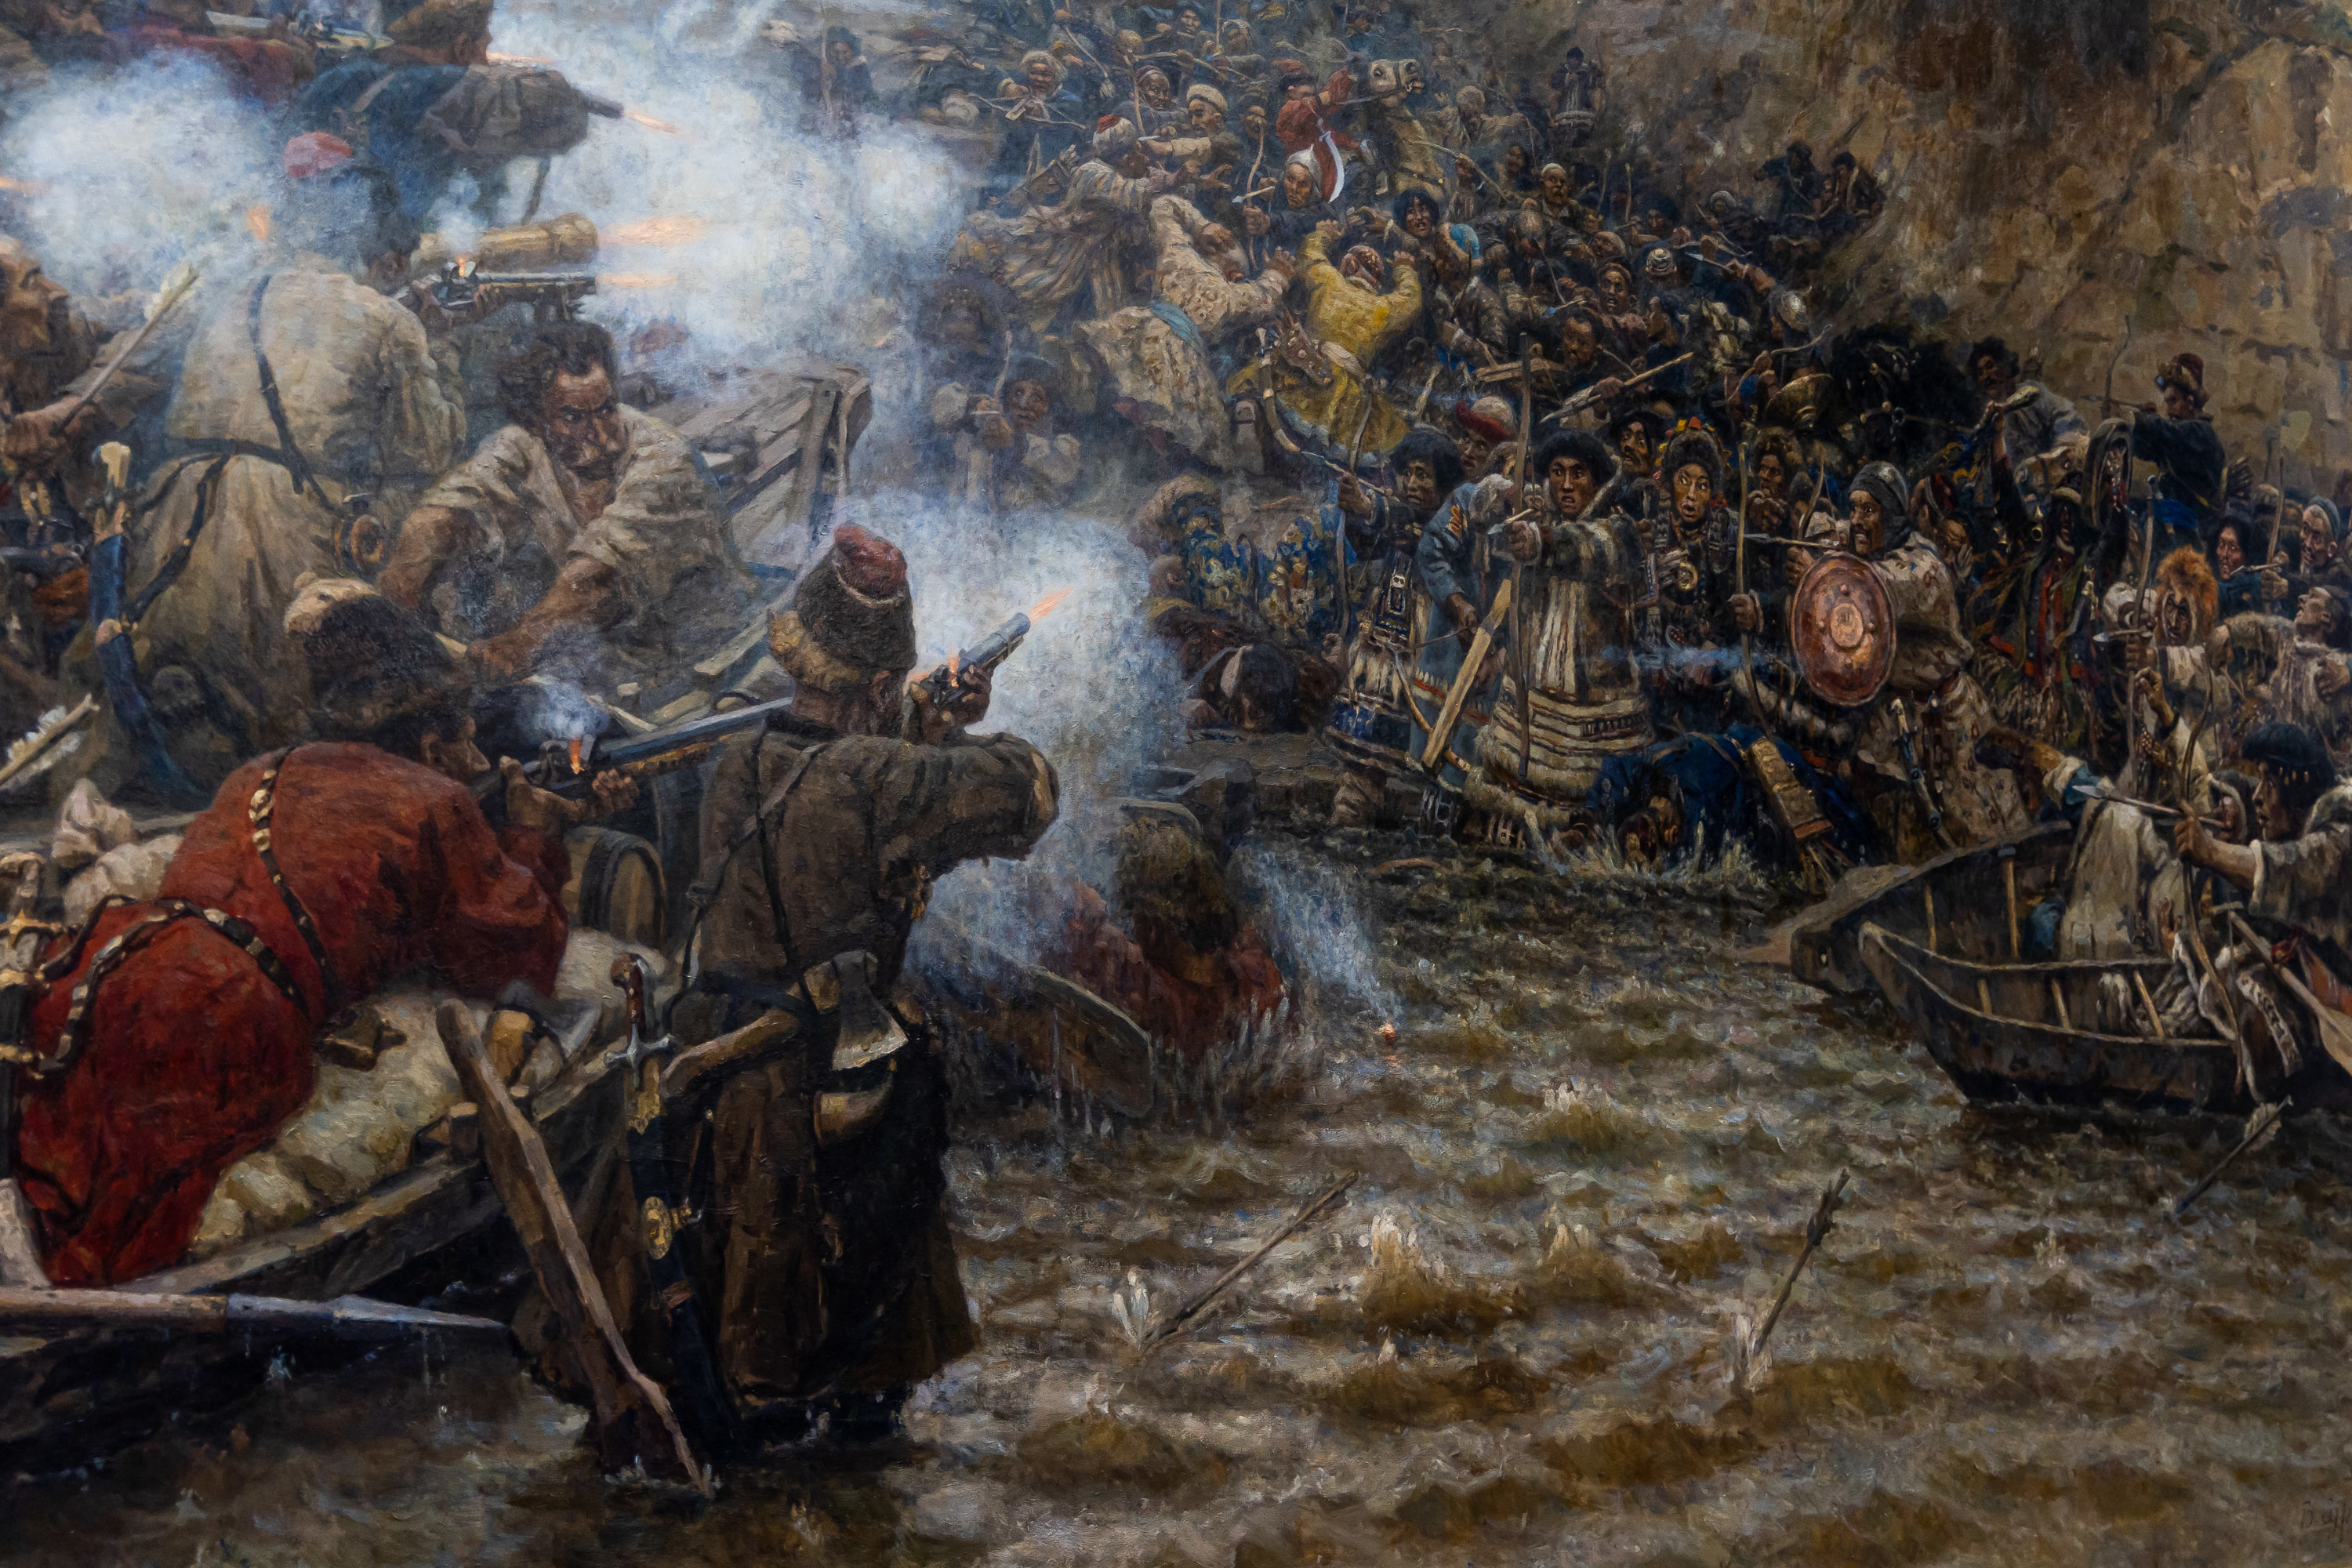 Сюжет картины строится вокруг битвы войска Ермака с полчищами хана Кучума в 1582 году